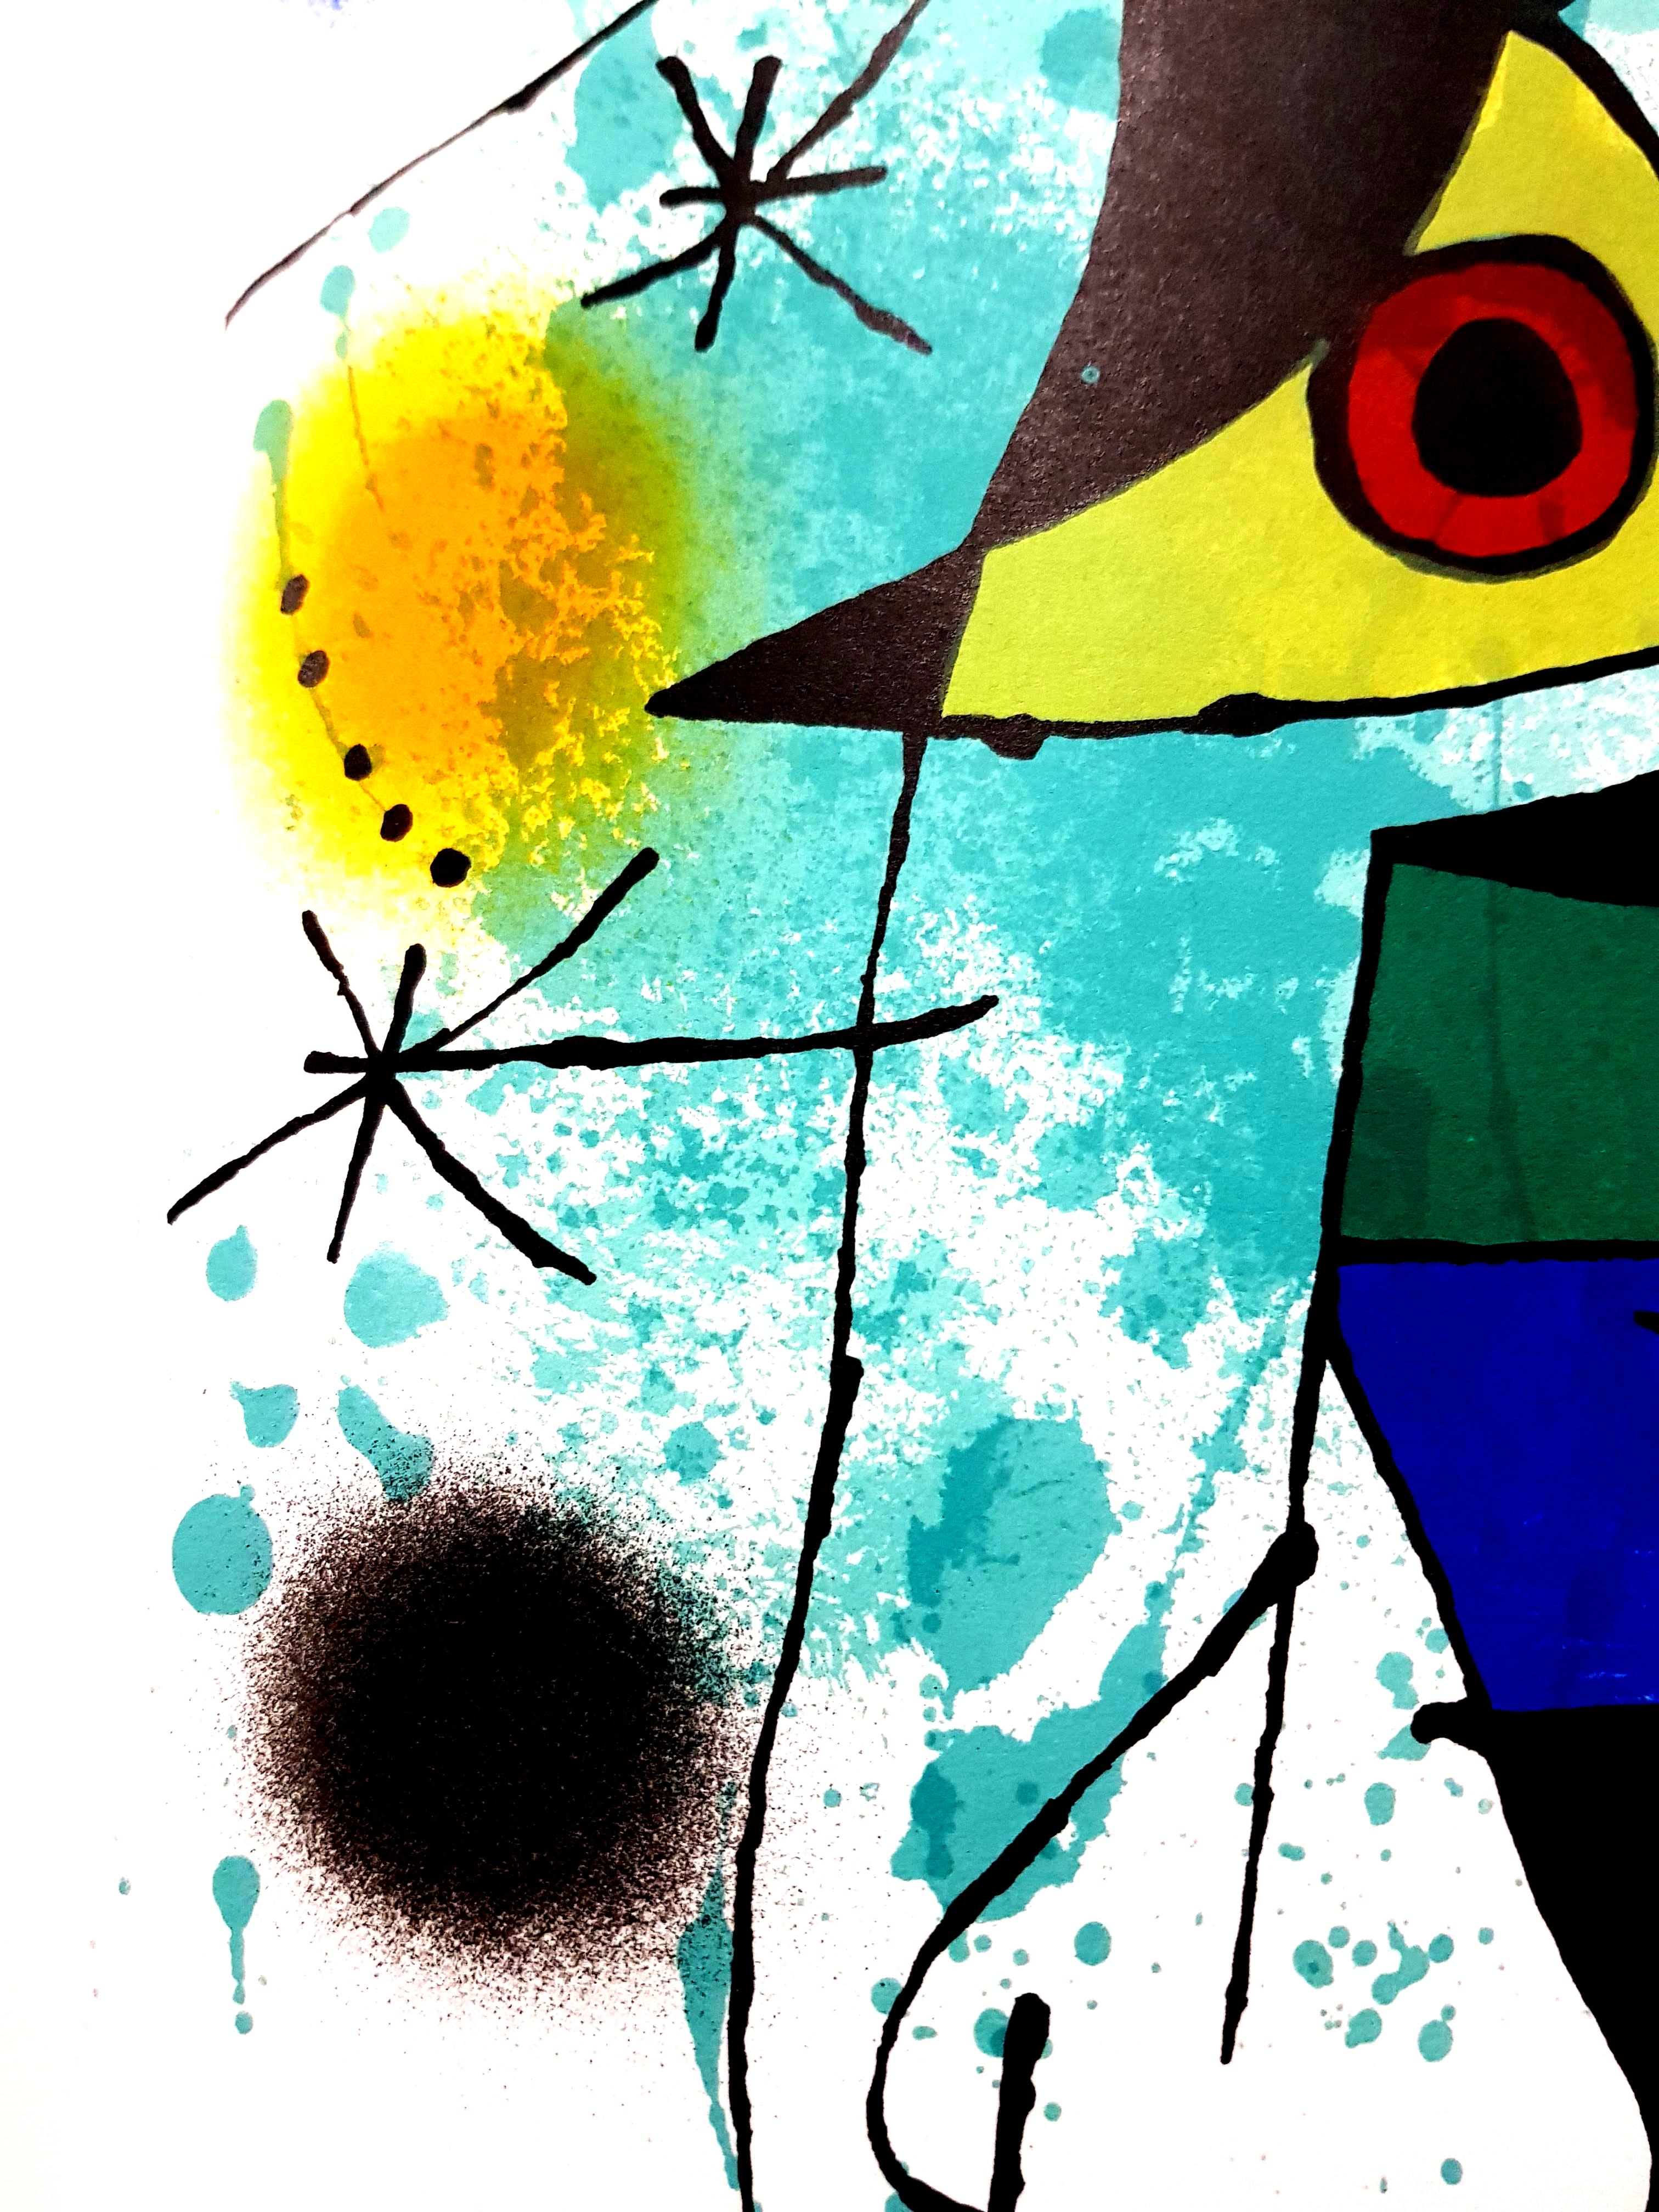 Joan Miro - Original Abstract Lithograph - Gray Abstract Print by Joan Miró